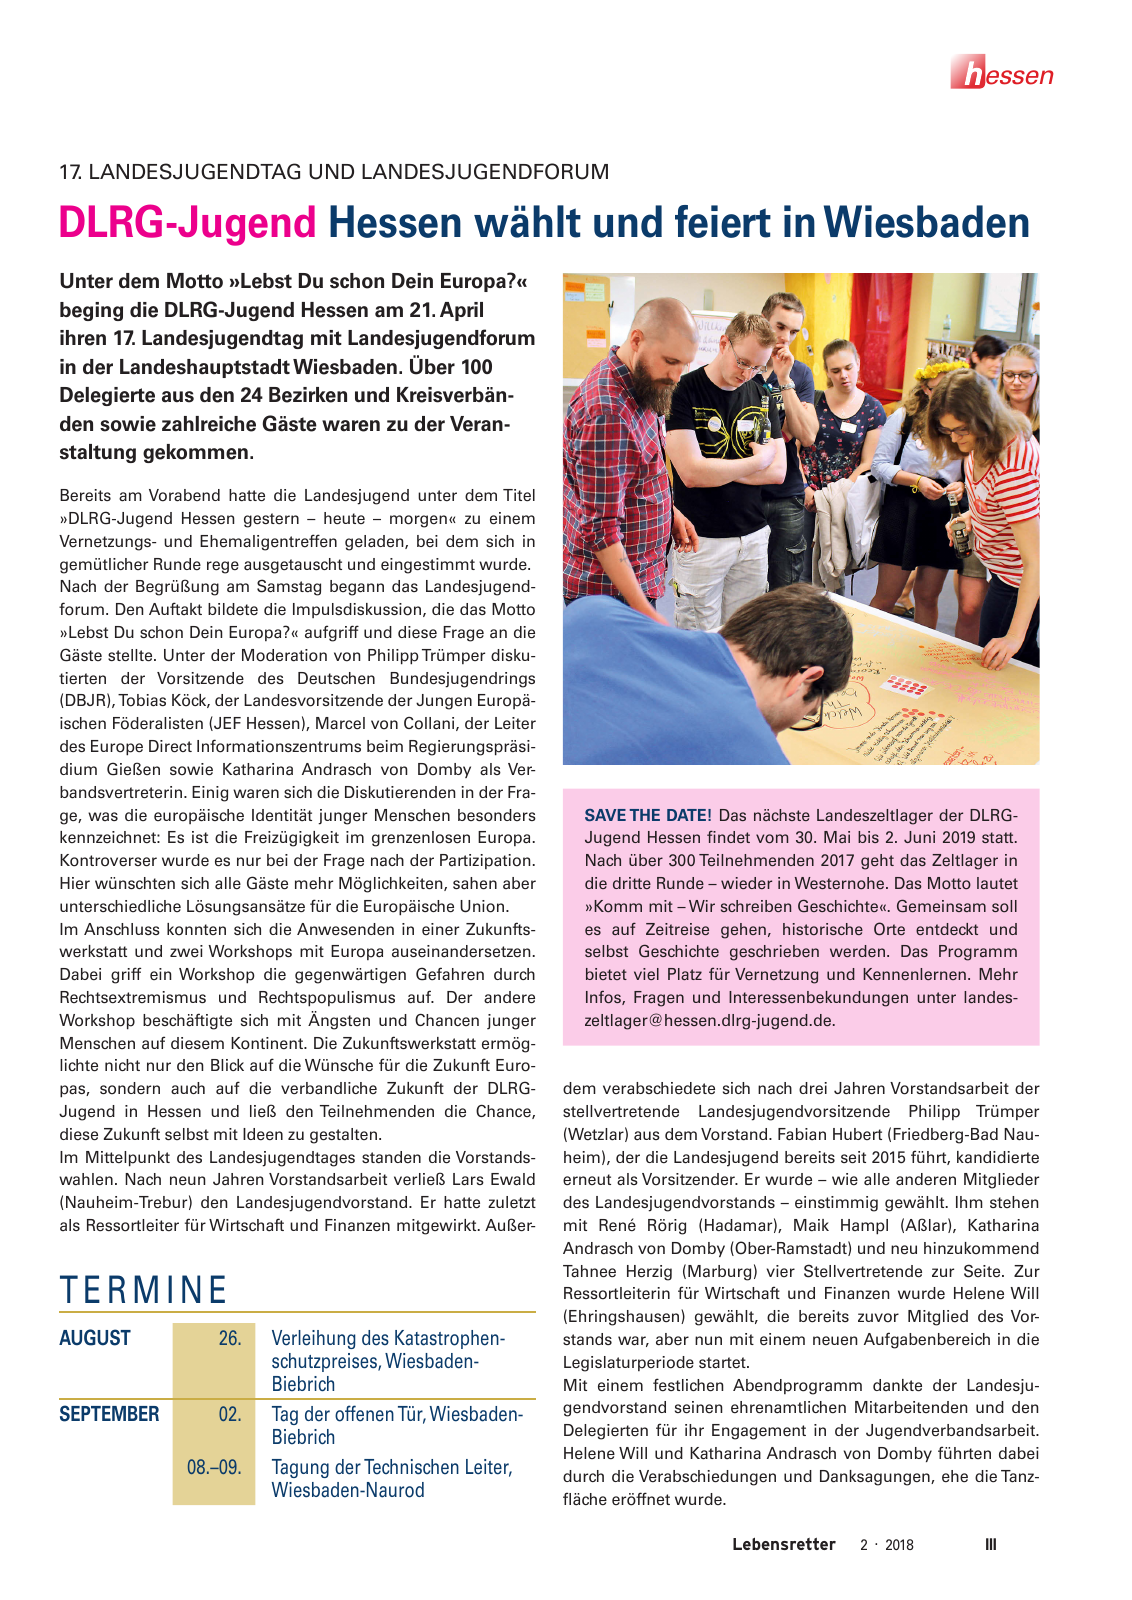 Vorschau Lebensretter 2/2018 - Regionalausgabe Hessen Seite 5